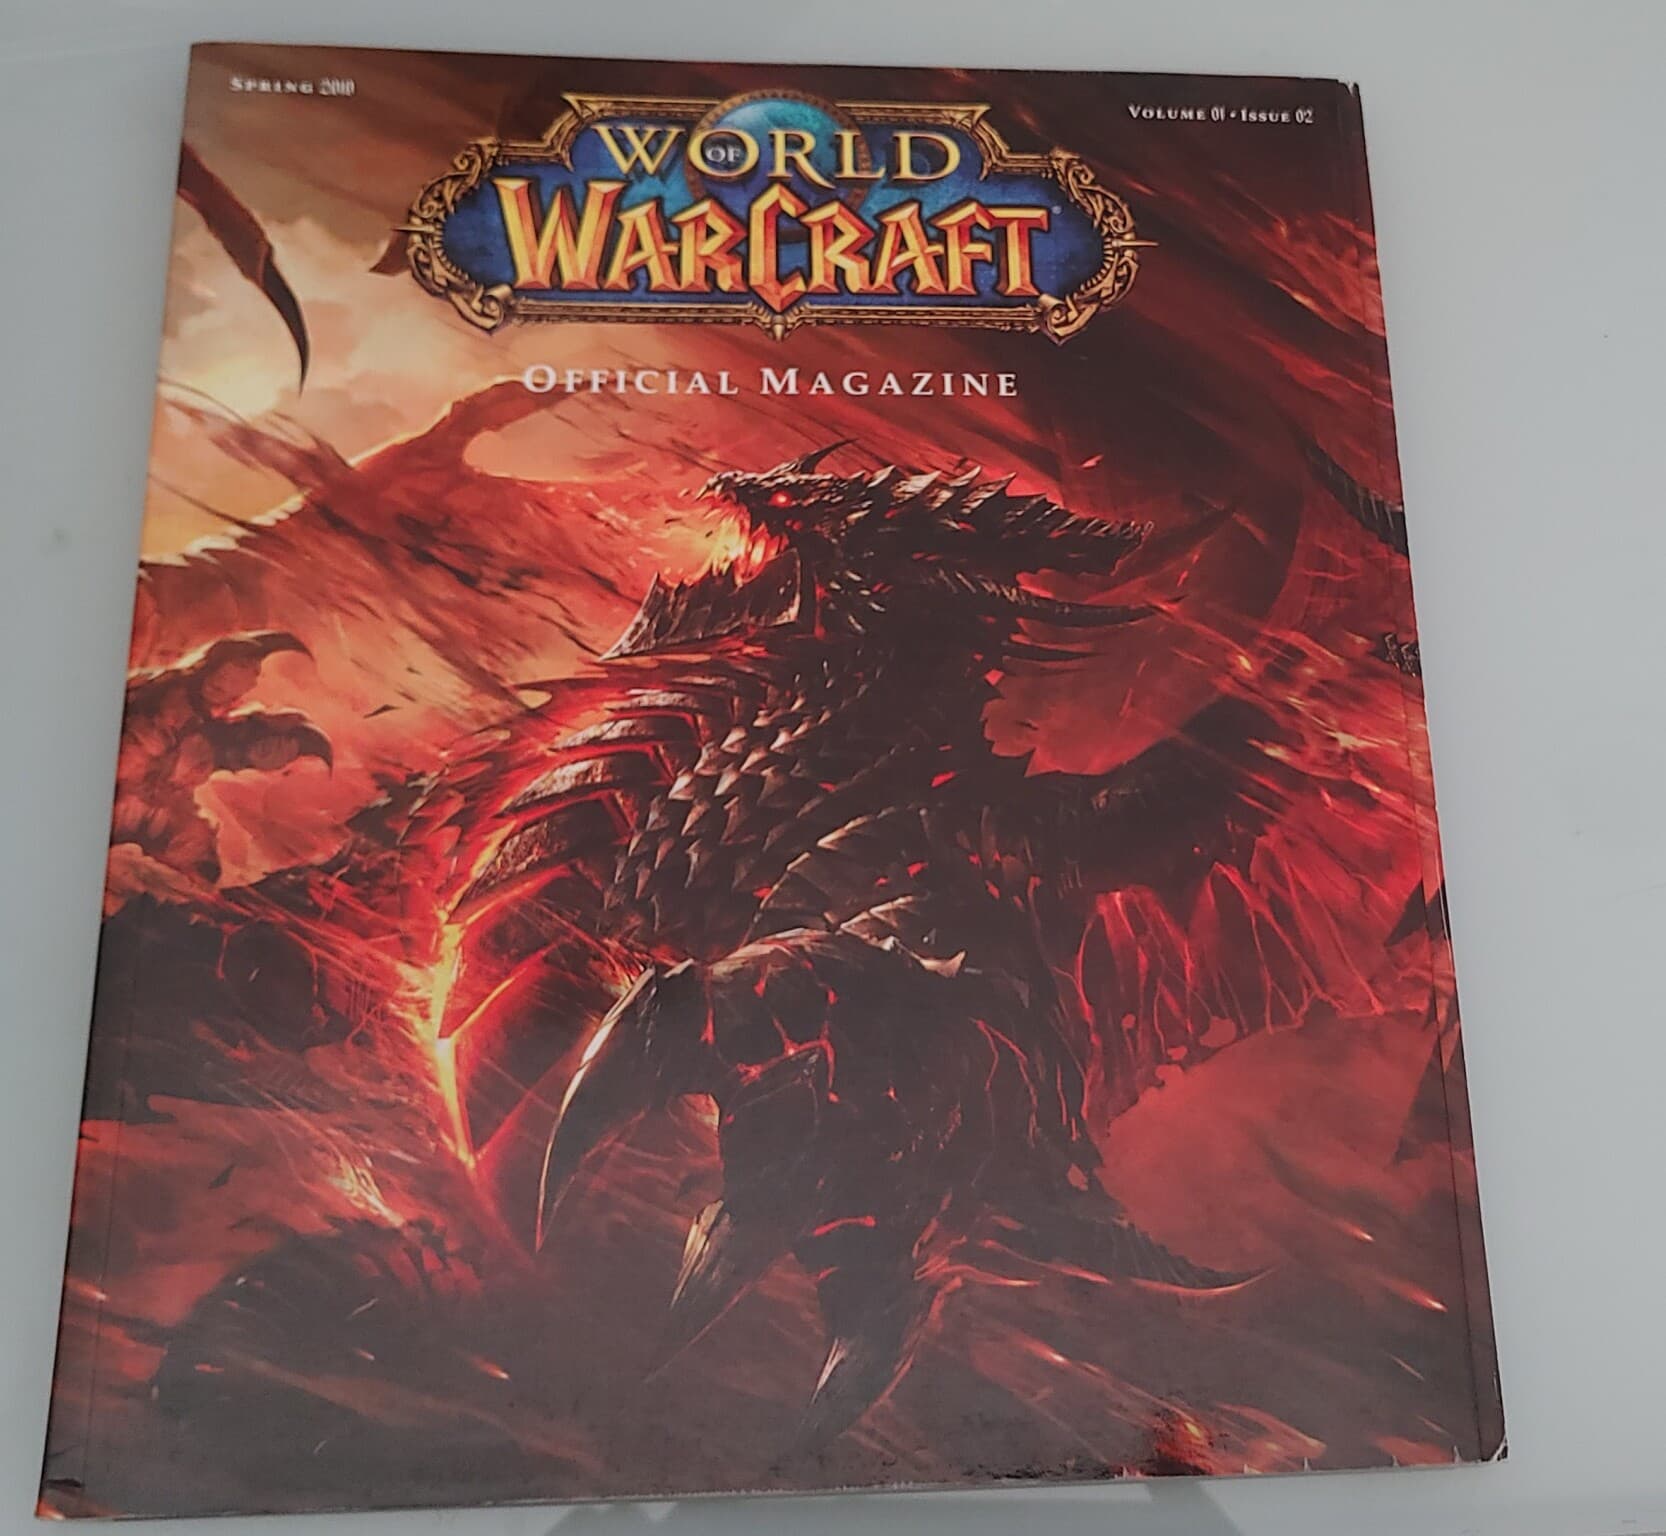 월드 오브 워크래프트 오피셜 매거진 World of warcraft official magazine Volume01 issue01~04(합4권)